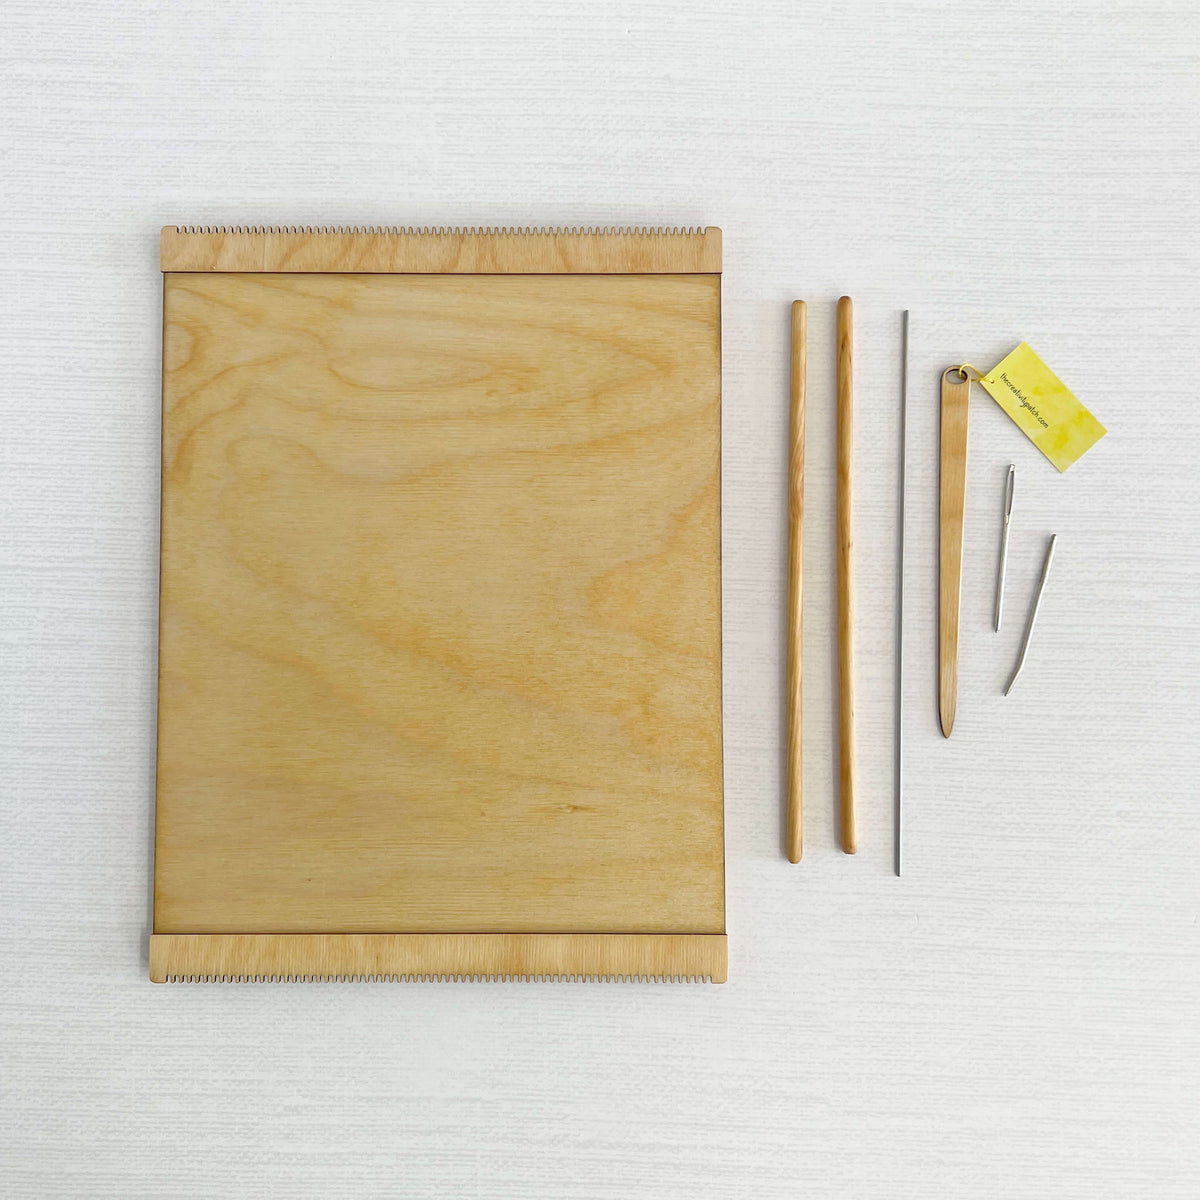 Tinka Loom Kit - Wooden Loom - 9x12 inch